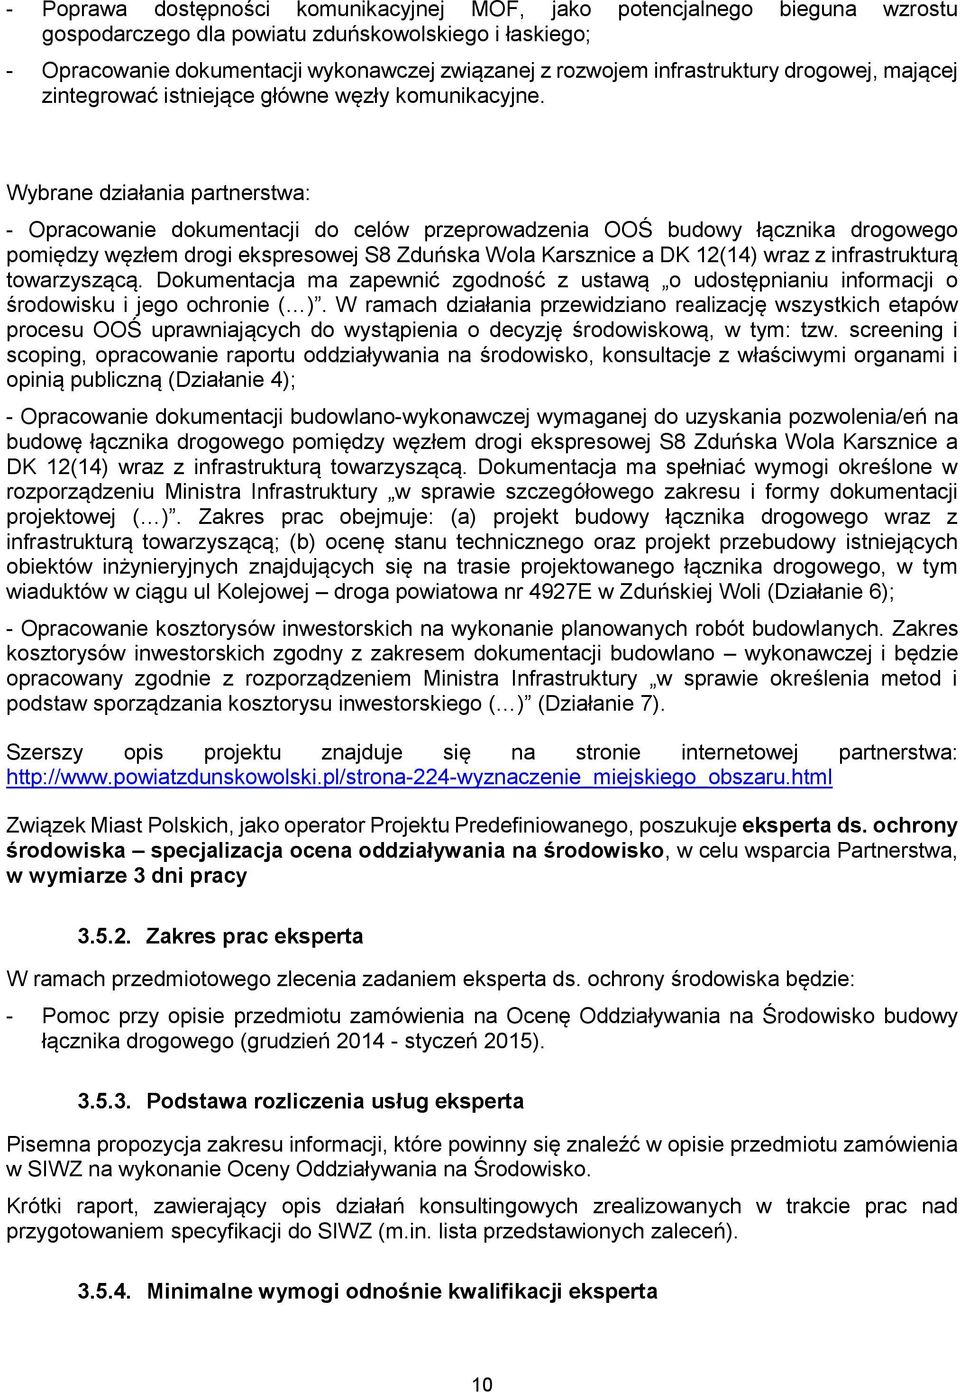 Wybrane działania partnerstwa: - Opracowanie dokumentacji do celów przeprowadzenia OOŚ budowy łącznika drogowego pomiędzy węzłem drogi ekspresowej S8 Zduńska Wola Karsznice a DK 12(14) wraz z